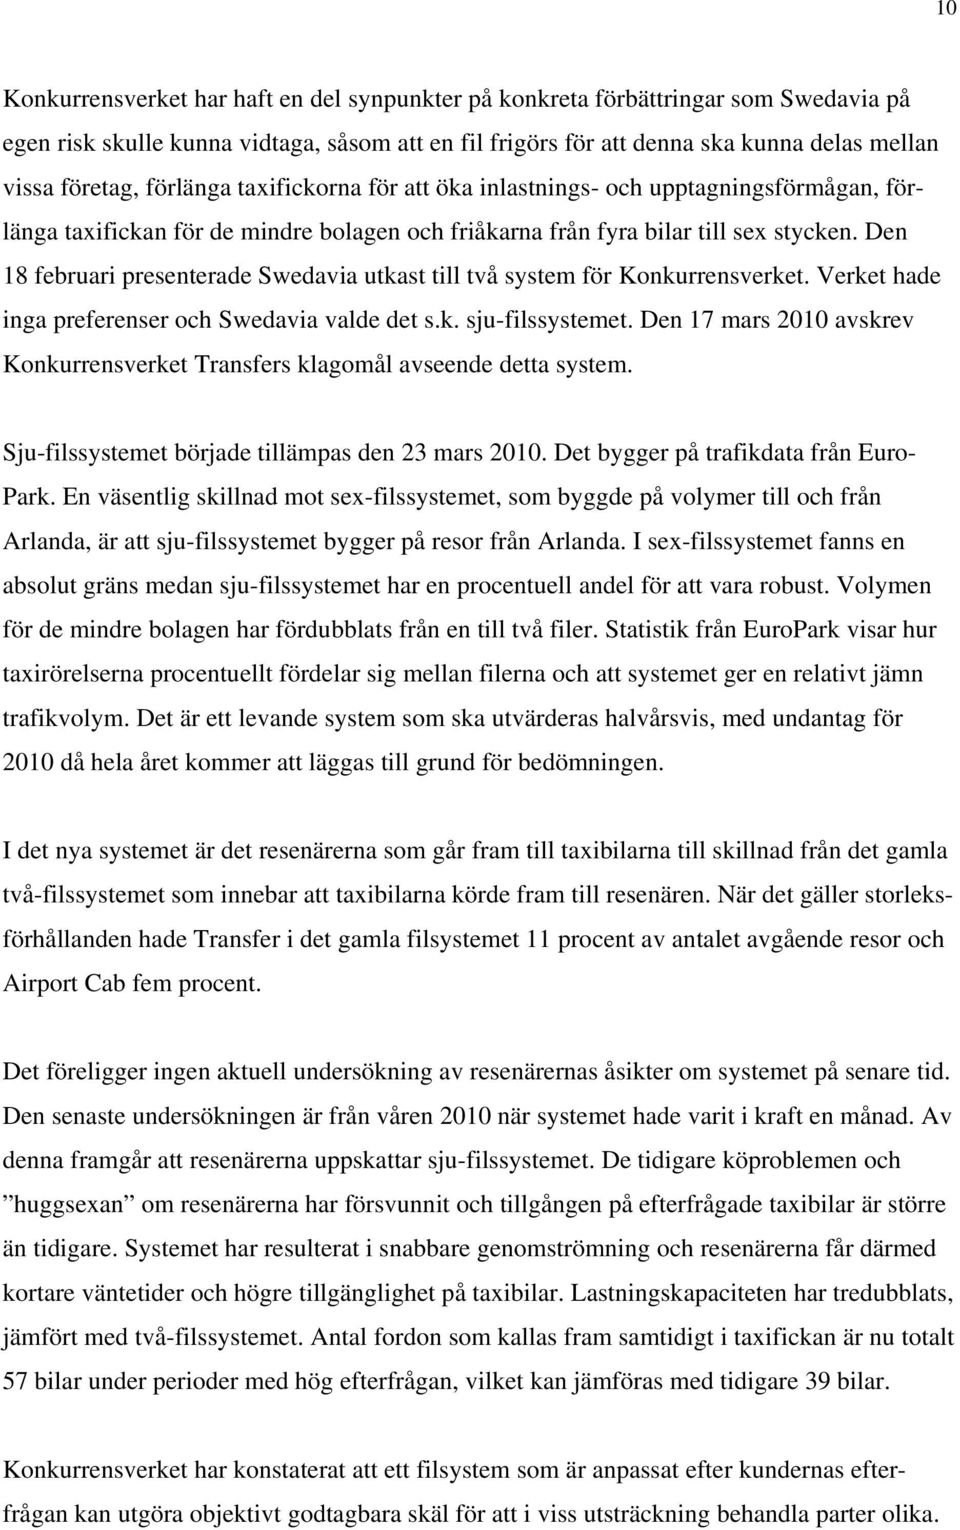 Den 18 februari presenterade Swedavia utkast till två system för Konkurrensverket. Verket hade inga preferenser och Swedavia valde det s.k. sju-filssystemet.